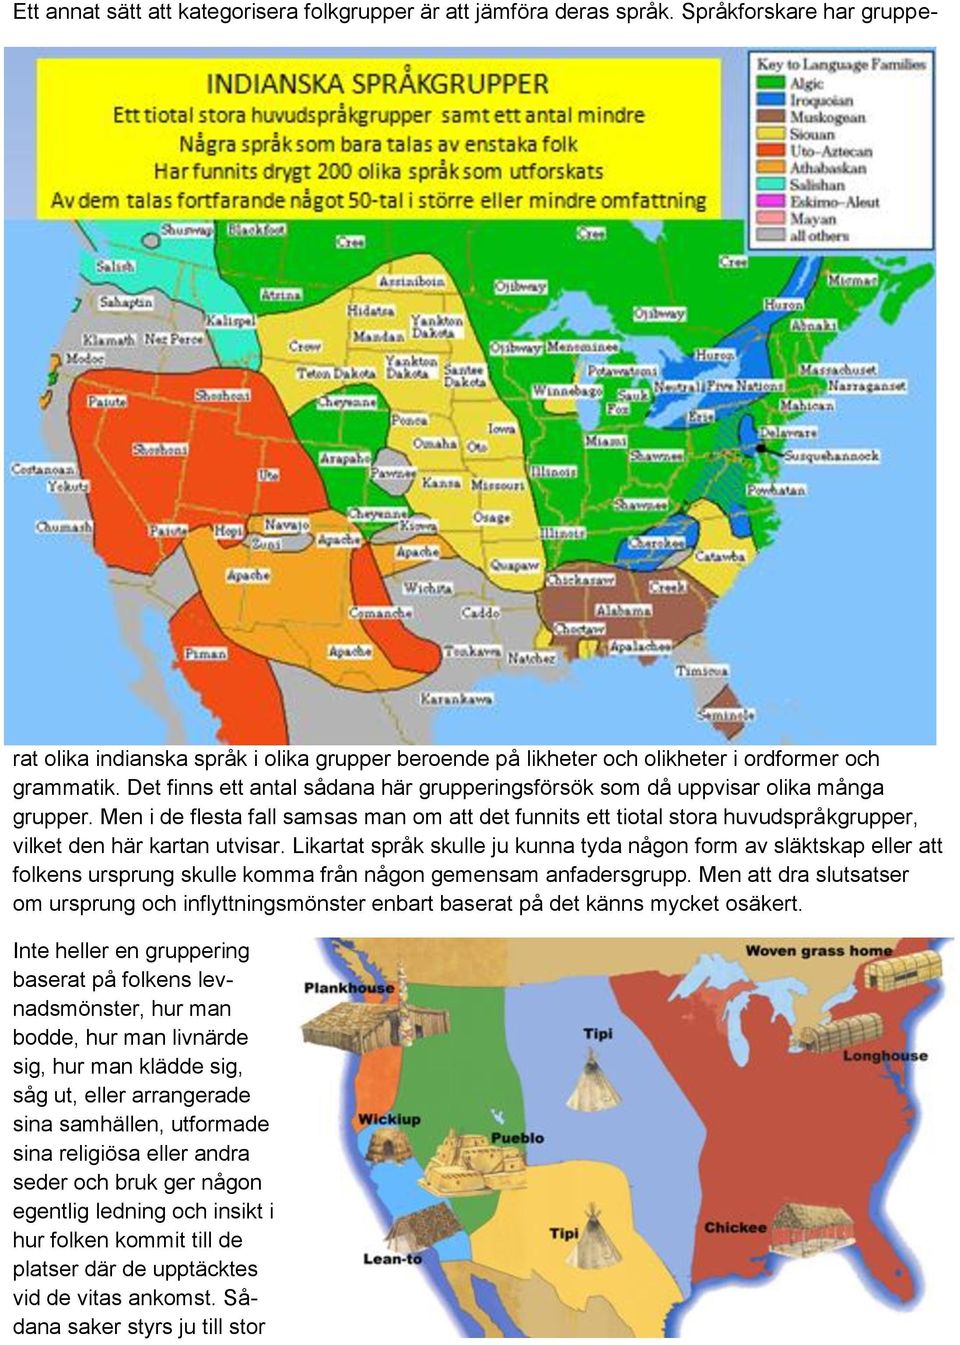 Men i de flesta fall samsas man om att det funnits ett tiotal stora huvudspråkgrupper, vilket den här kartan utvisar.